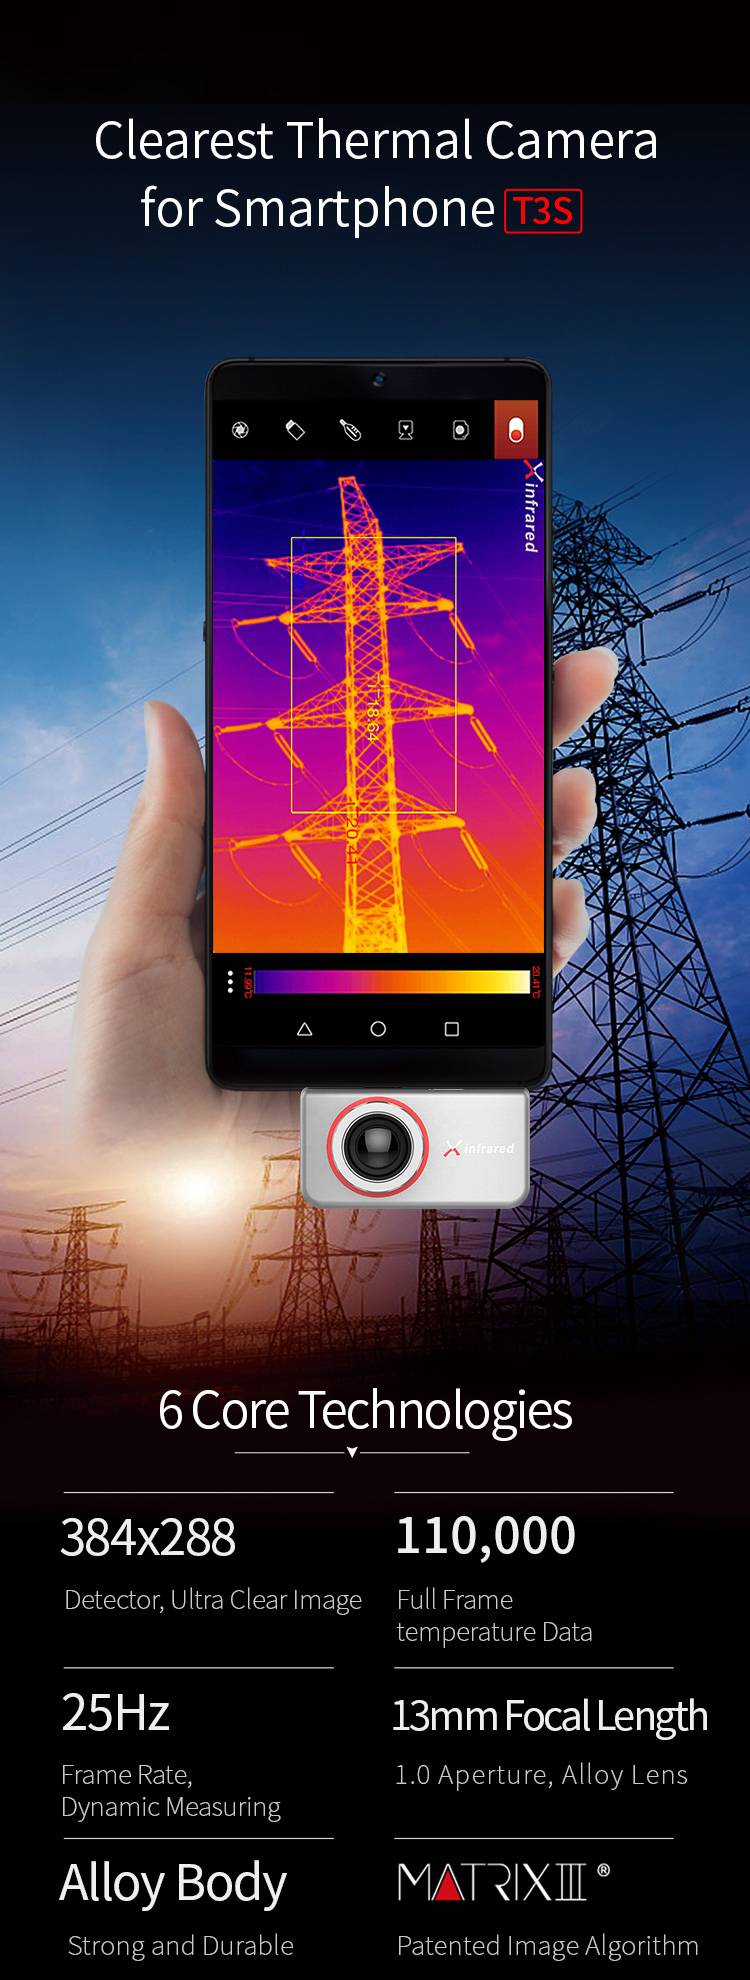 InfiRay – caméra d'imagerie thermique à infrarouge T3S T3PRO, pour l'extérieur, industriel, Circuit PCB, détection de la chaleur au sol, imageur thermique pour téléphone